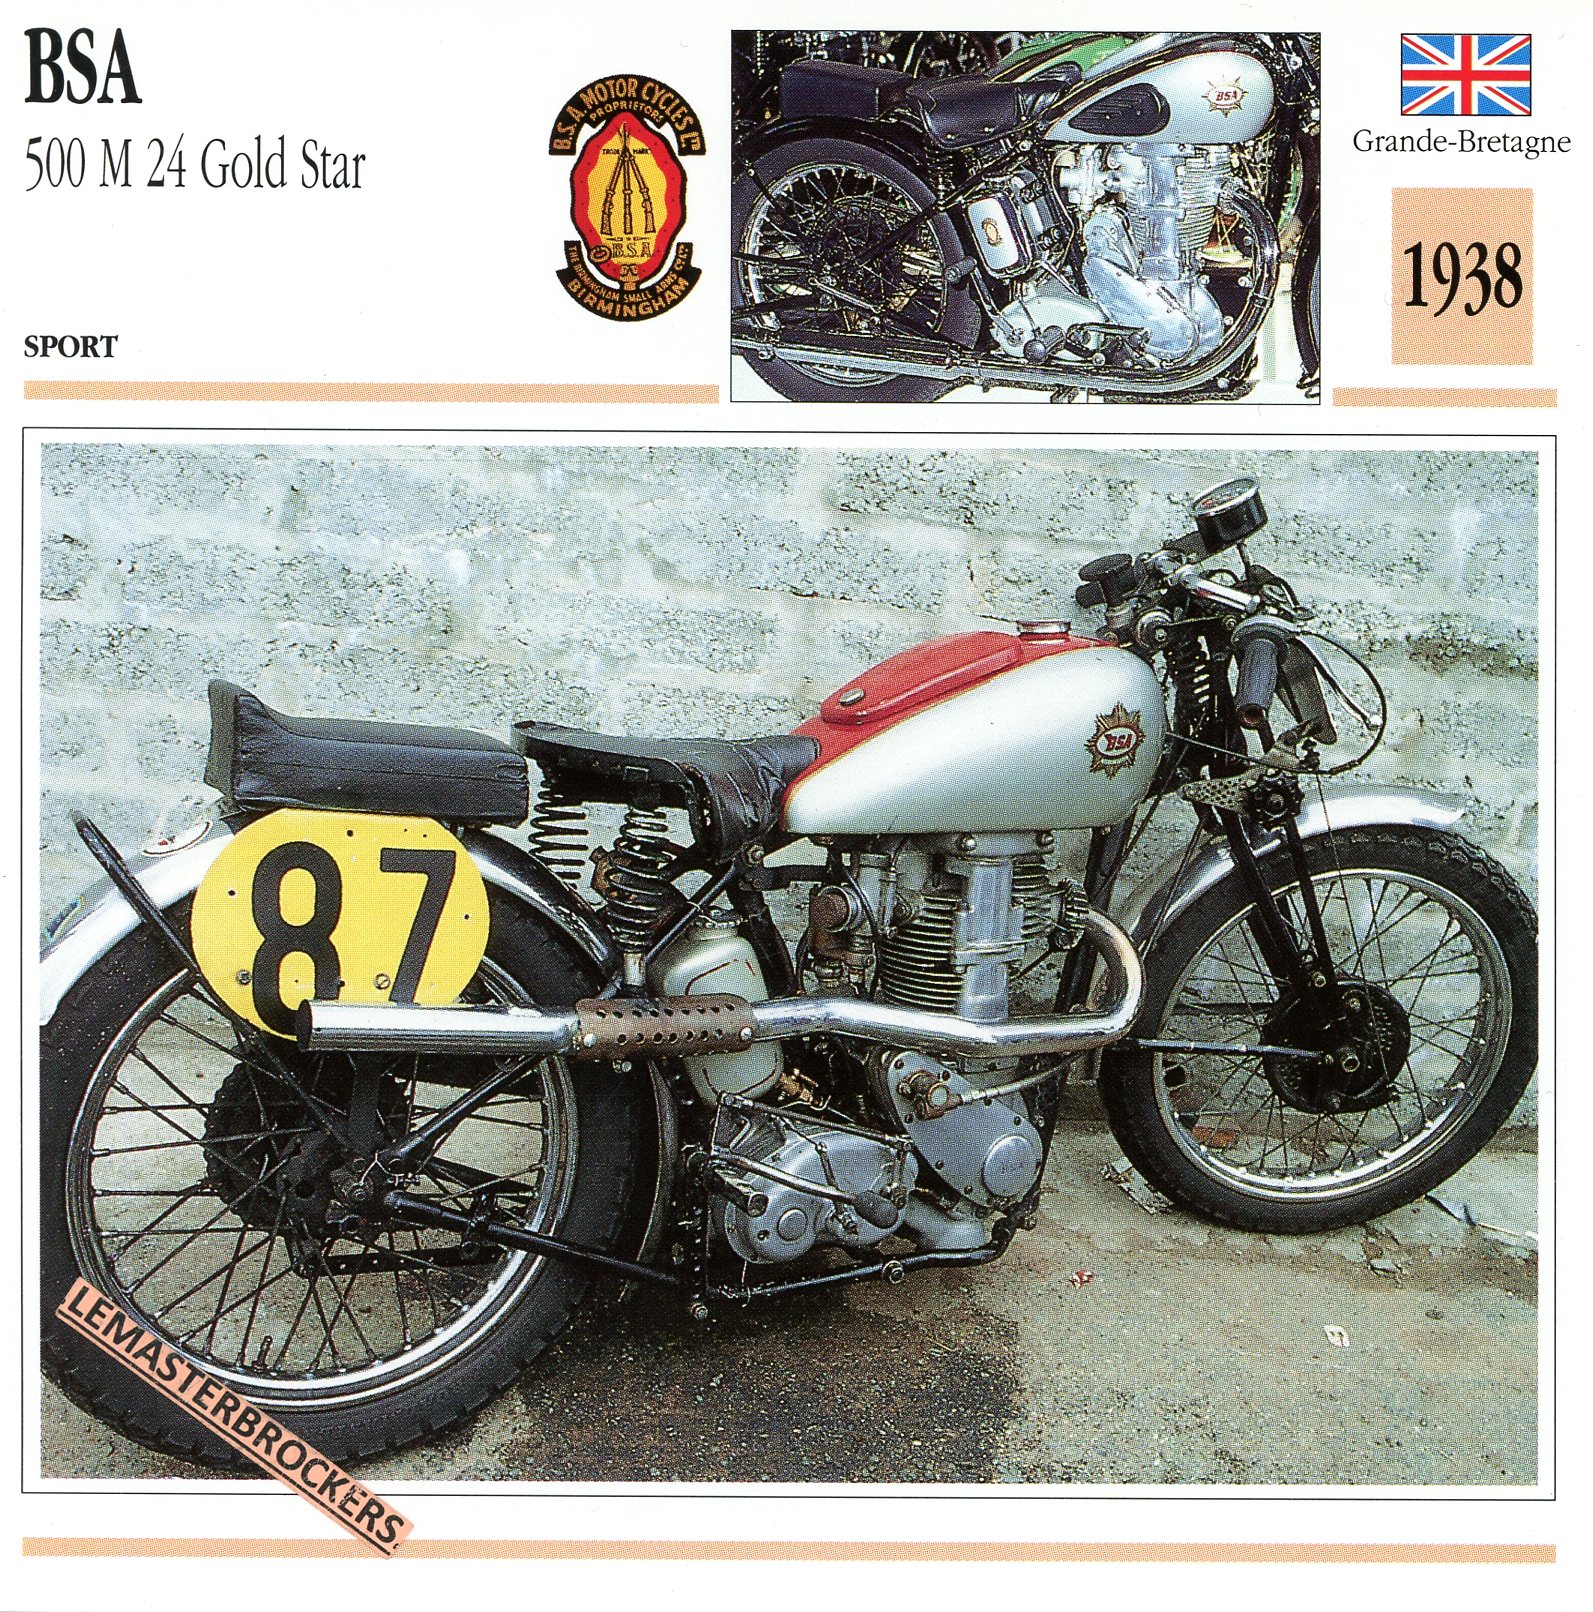 BSA-500-M24-GOLD-STAR-1938-FICHE-MOTO-LEMASTERBROCKERS